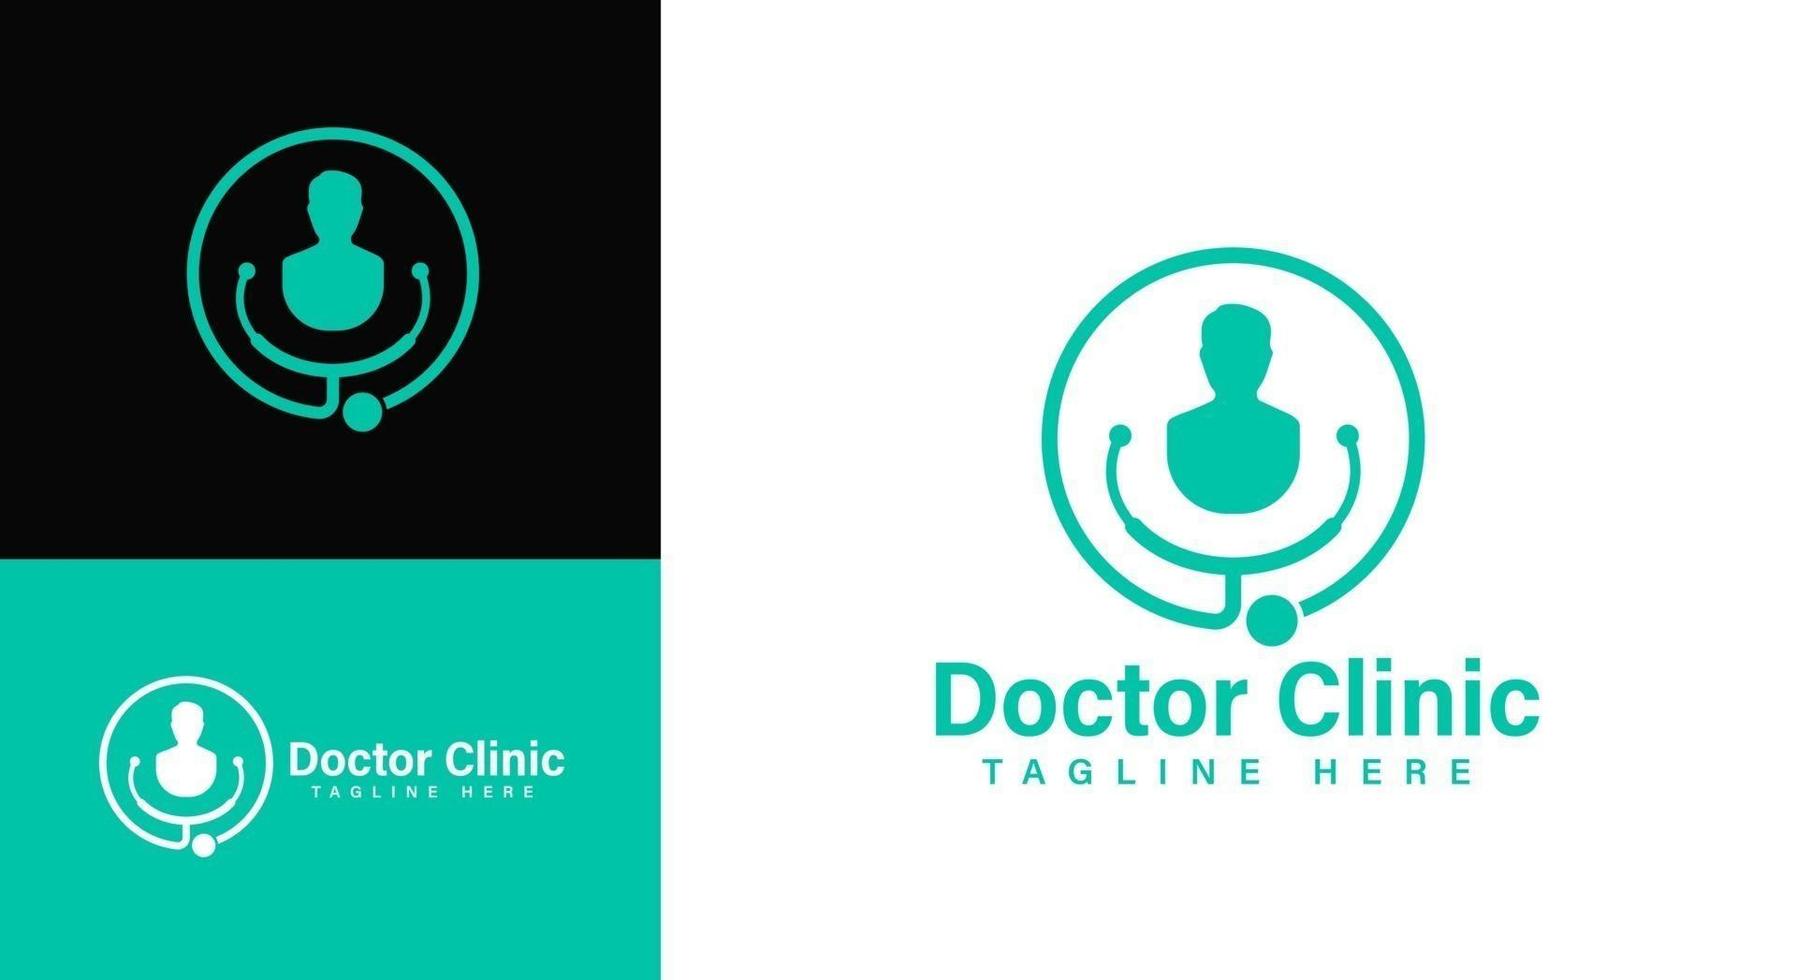 modello di logo di identità della clinica medica, medica, ospedaliera e sanitaria. illustrazione del logo vettoriale